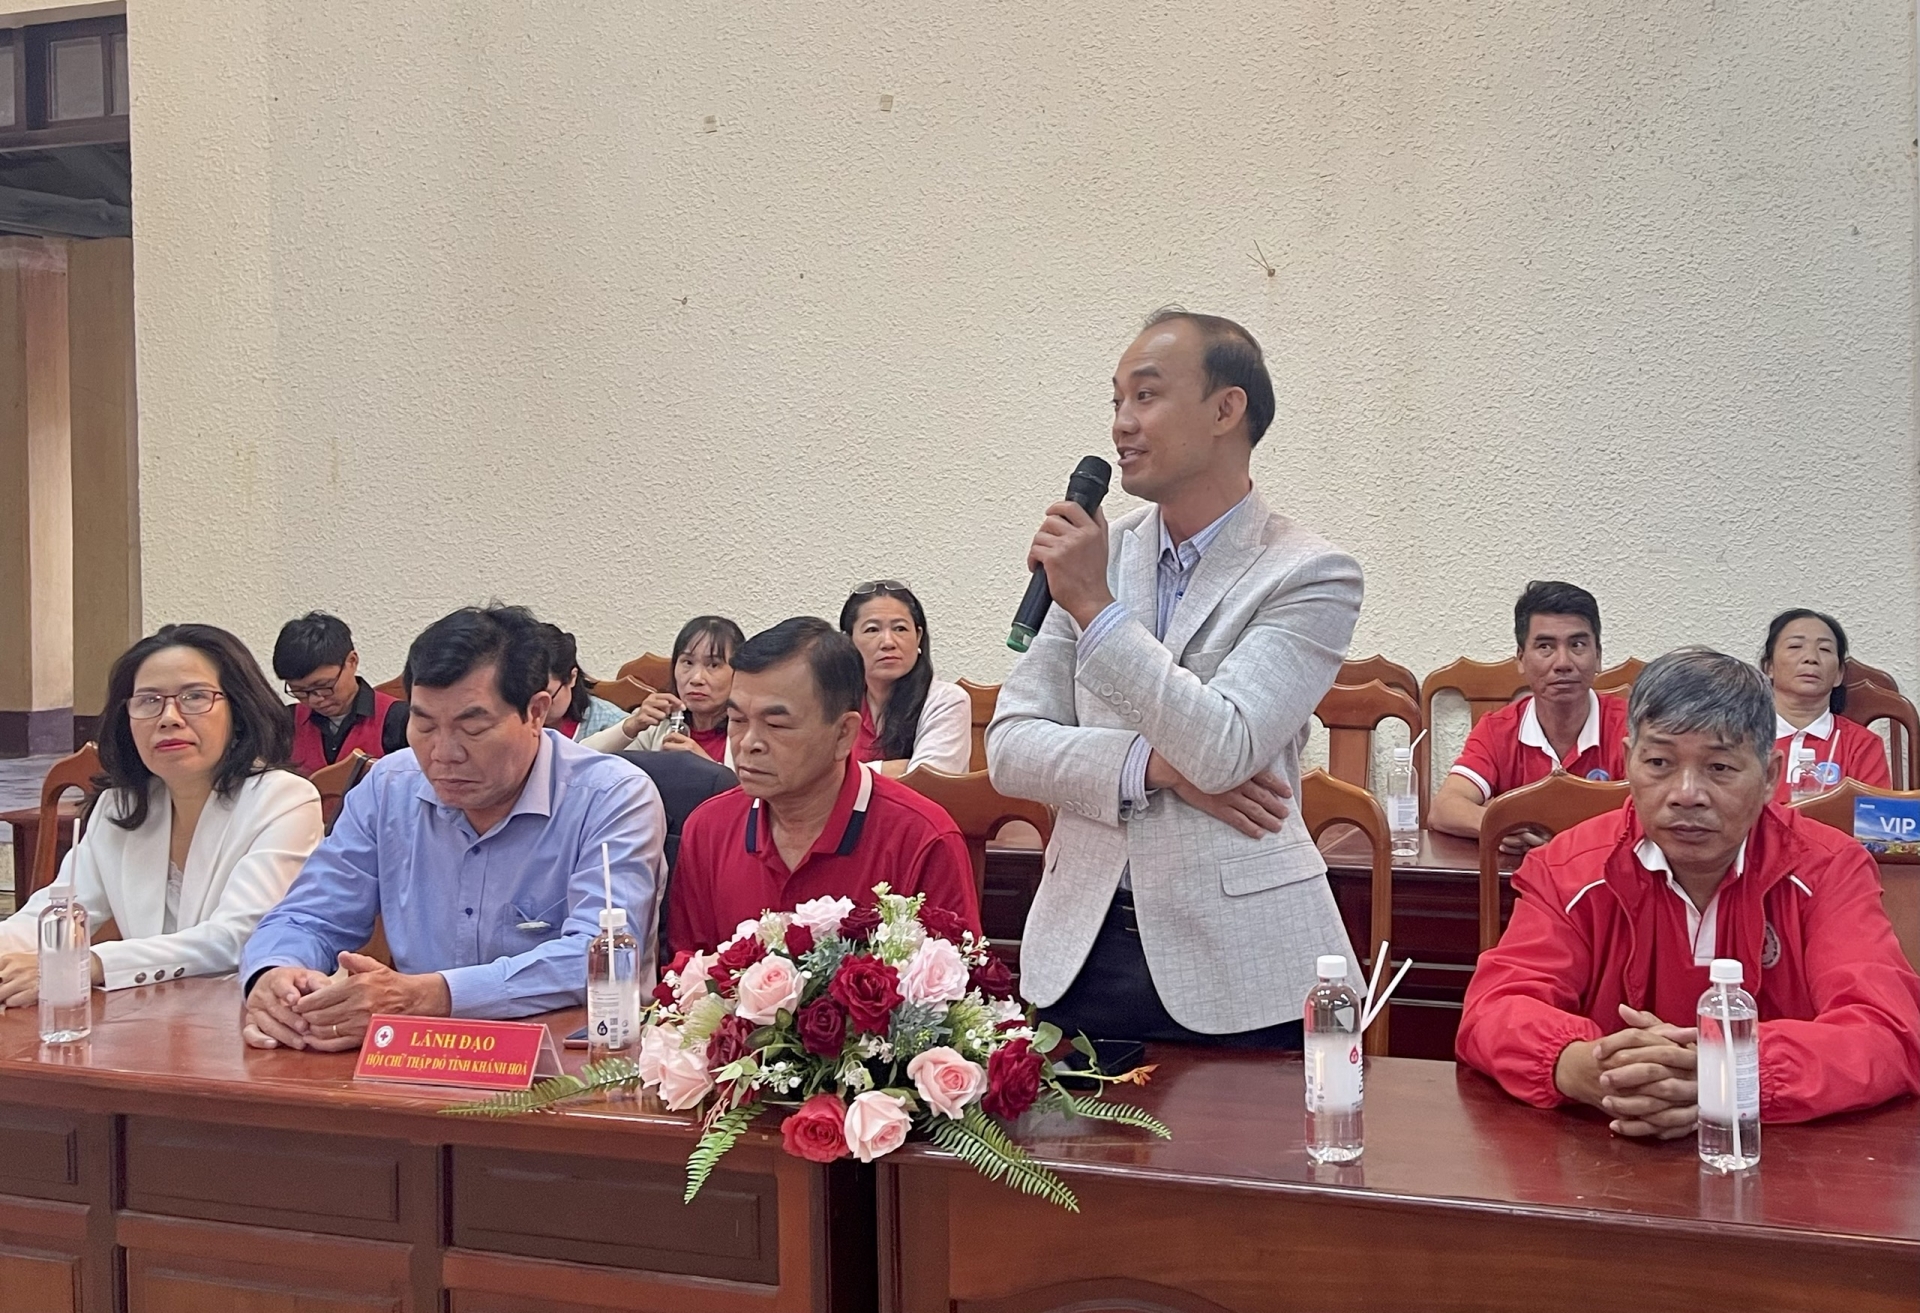 Bác sỹ Nguyễn Thành Lực –Phó Giám đốc Bệnh viện II Lâm Đồng cho biết về công tác tiếp nhận điều phối máu cho 6 huyện phía Nam tỉnh Lâm Đồng